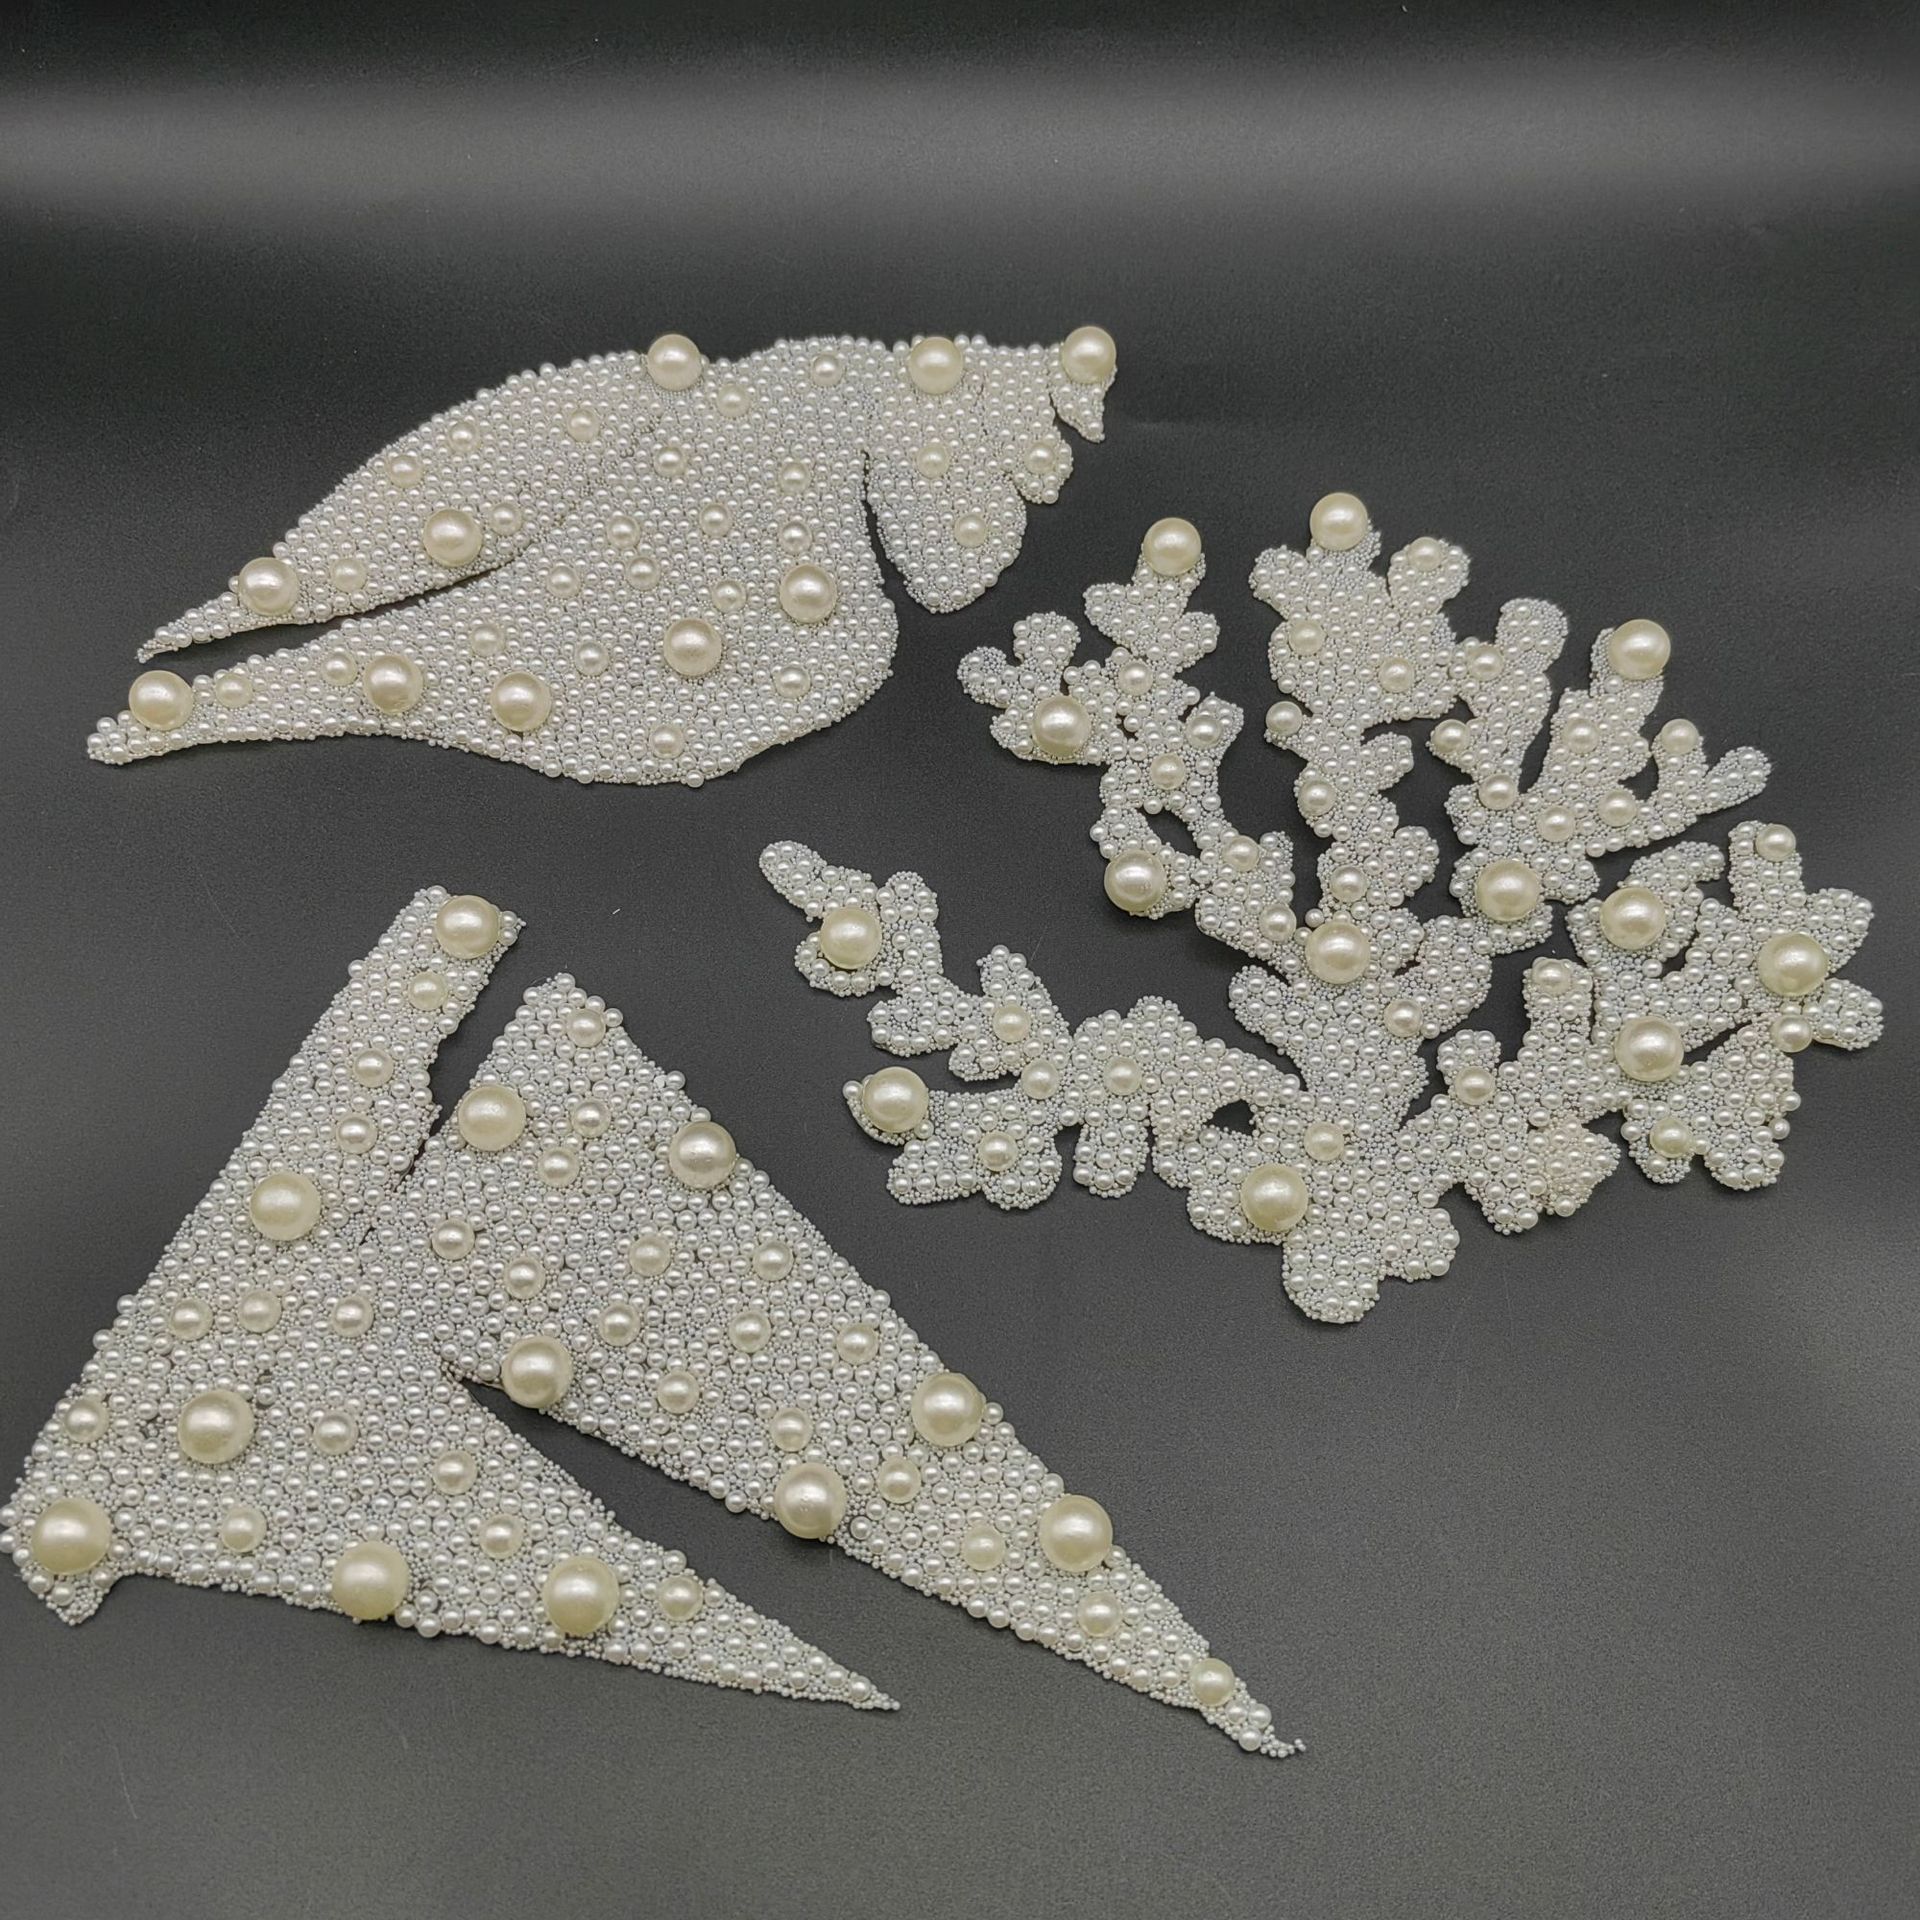 厂家直销珍珠烫胶饰品配件海螺珊瑚图案可多款配饰服装包包装饰贴